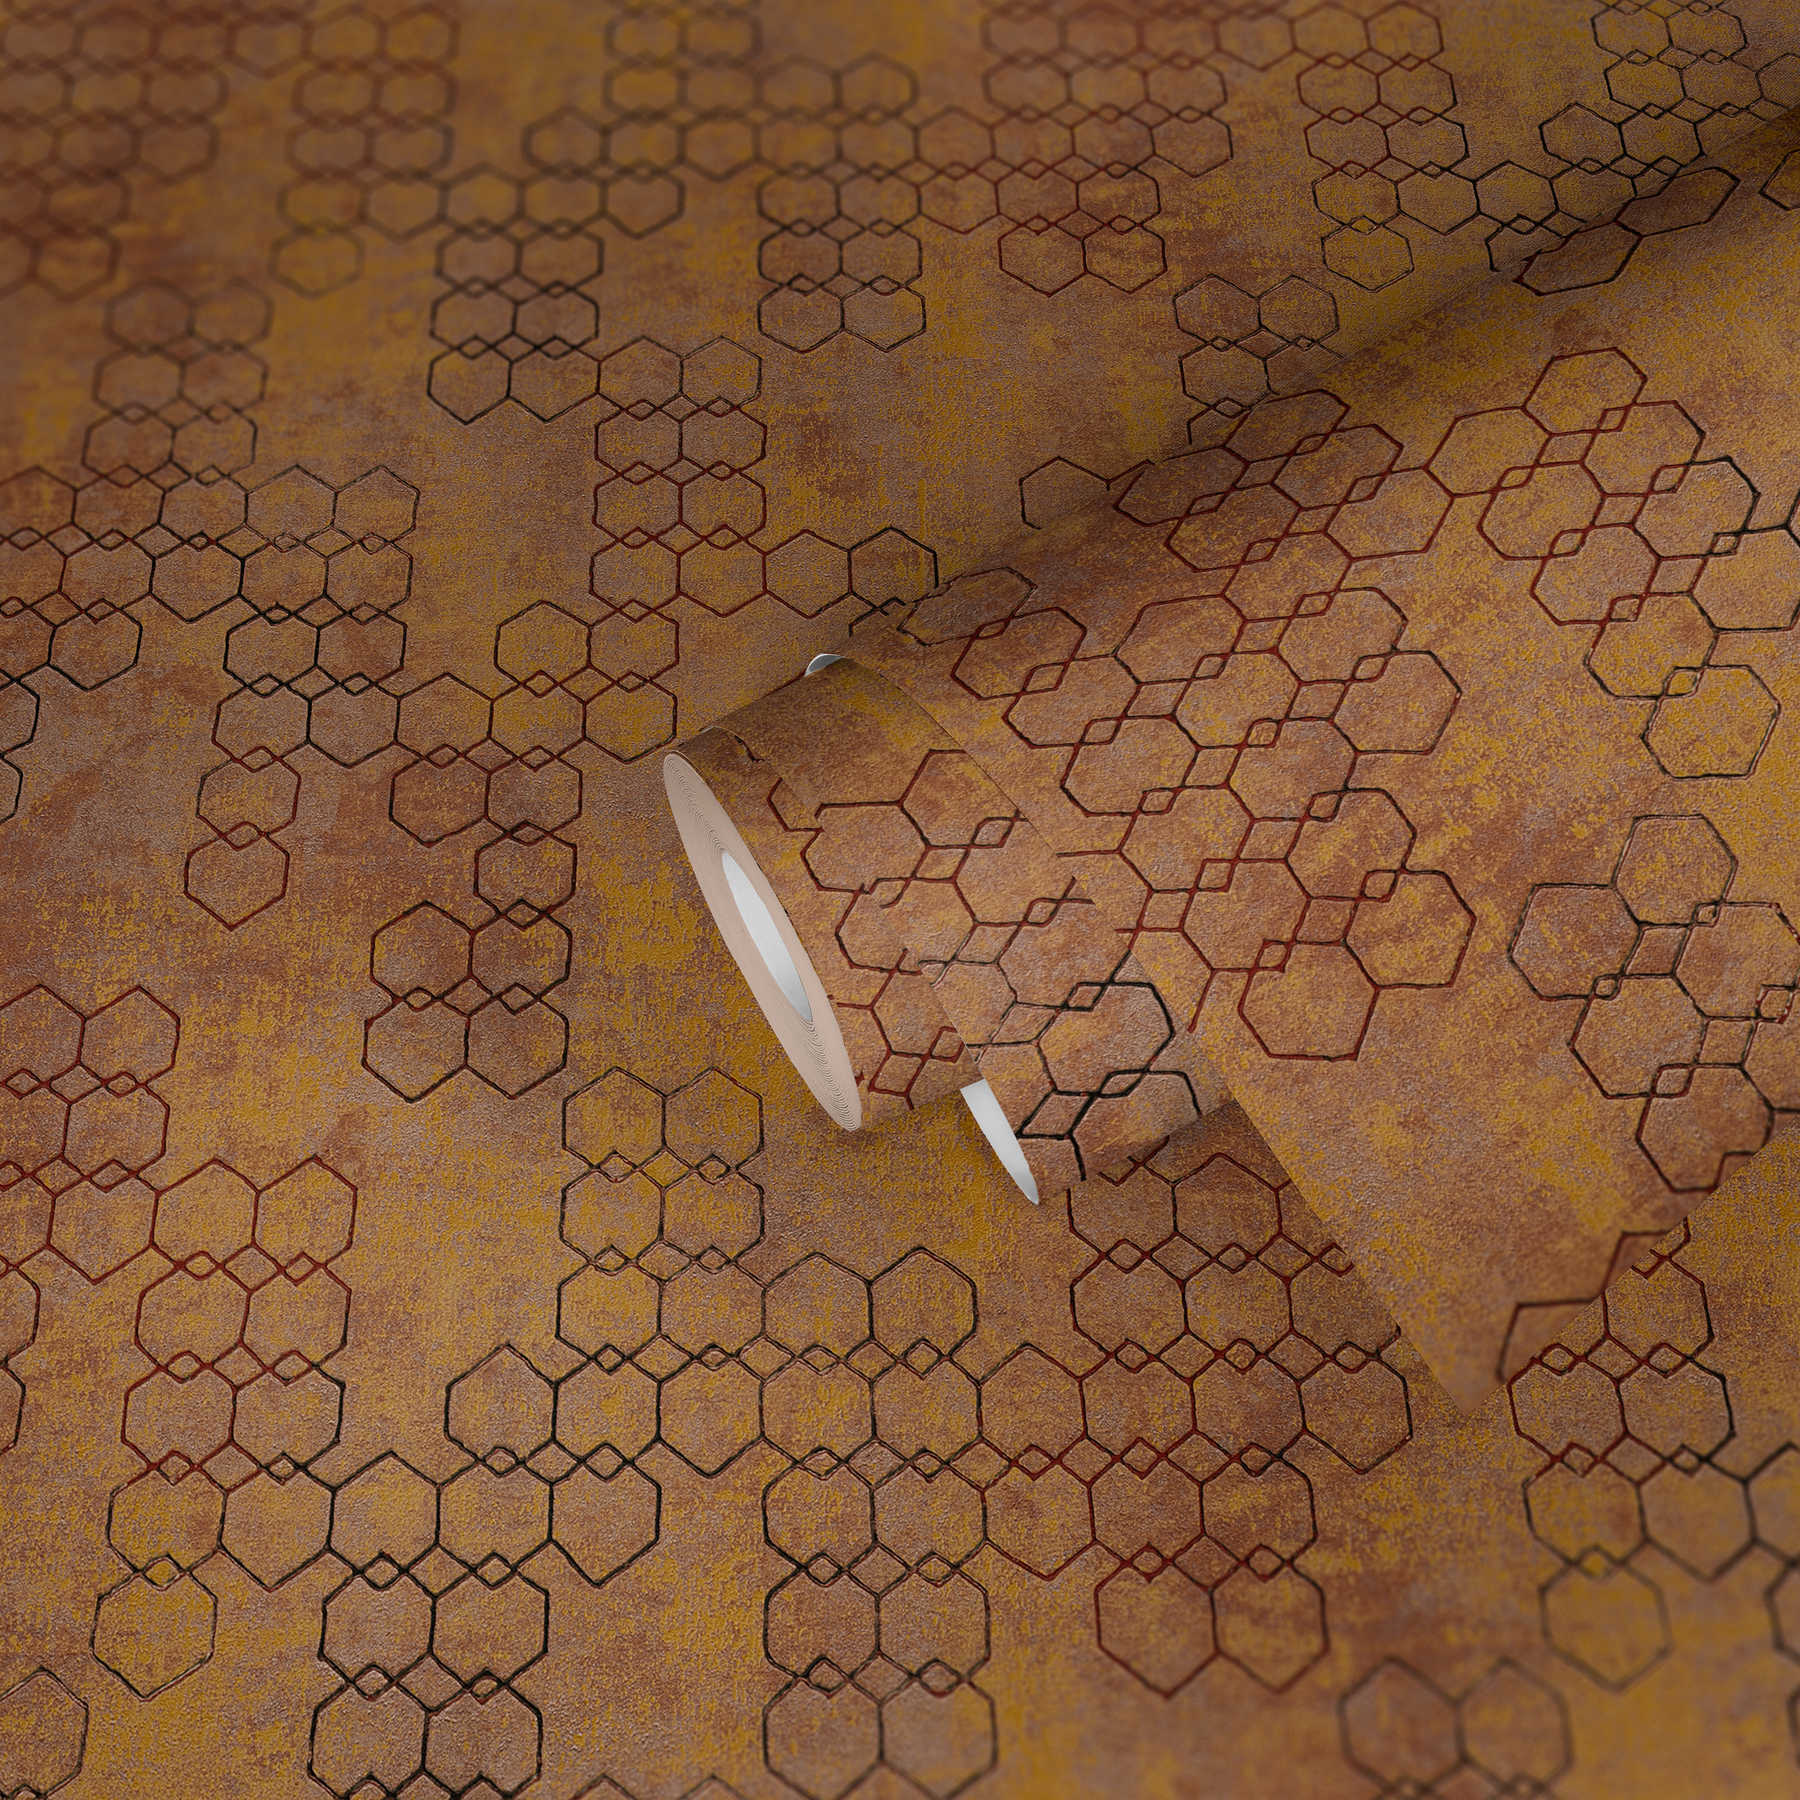             Geometrische Mustertapete im Industrial Style – Orange, Gold, Braun
        